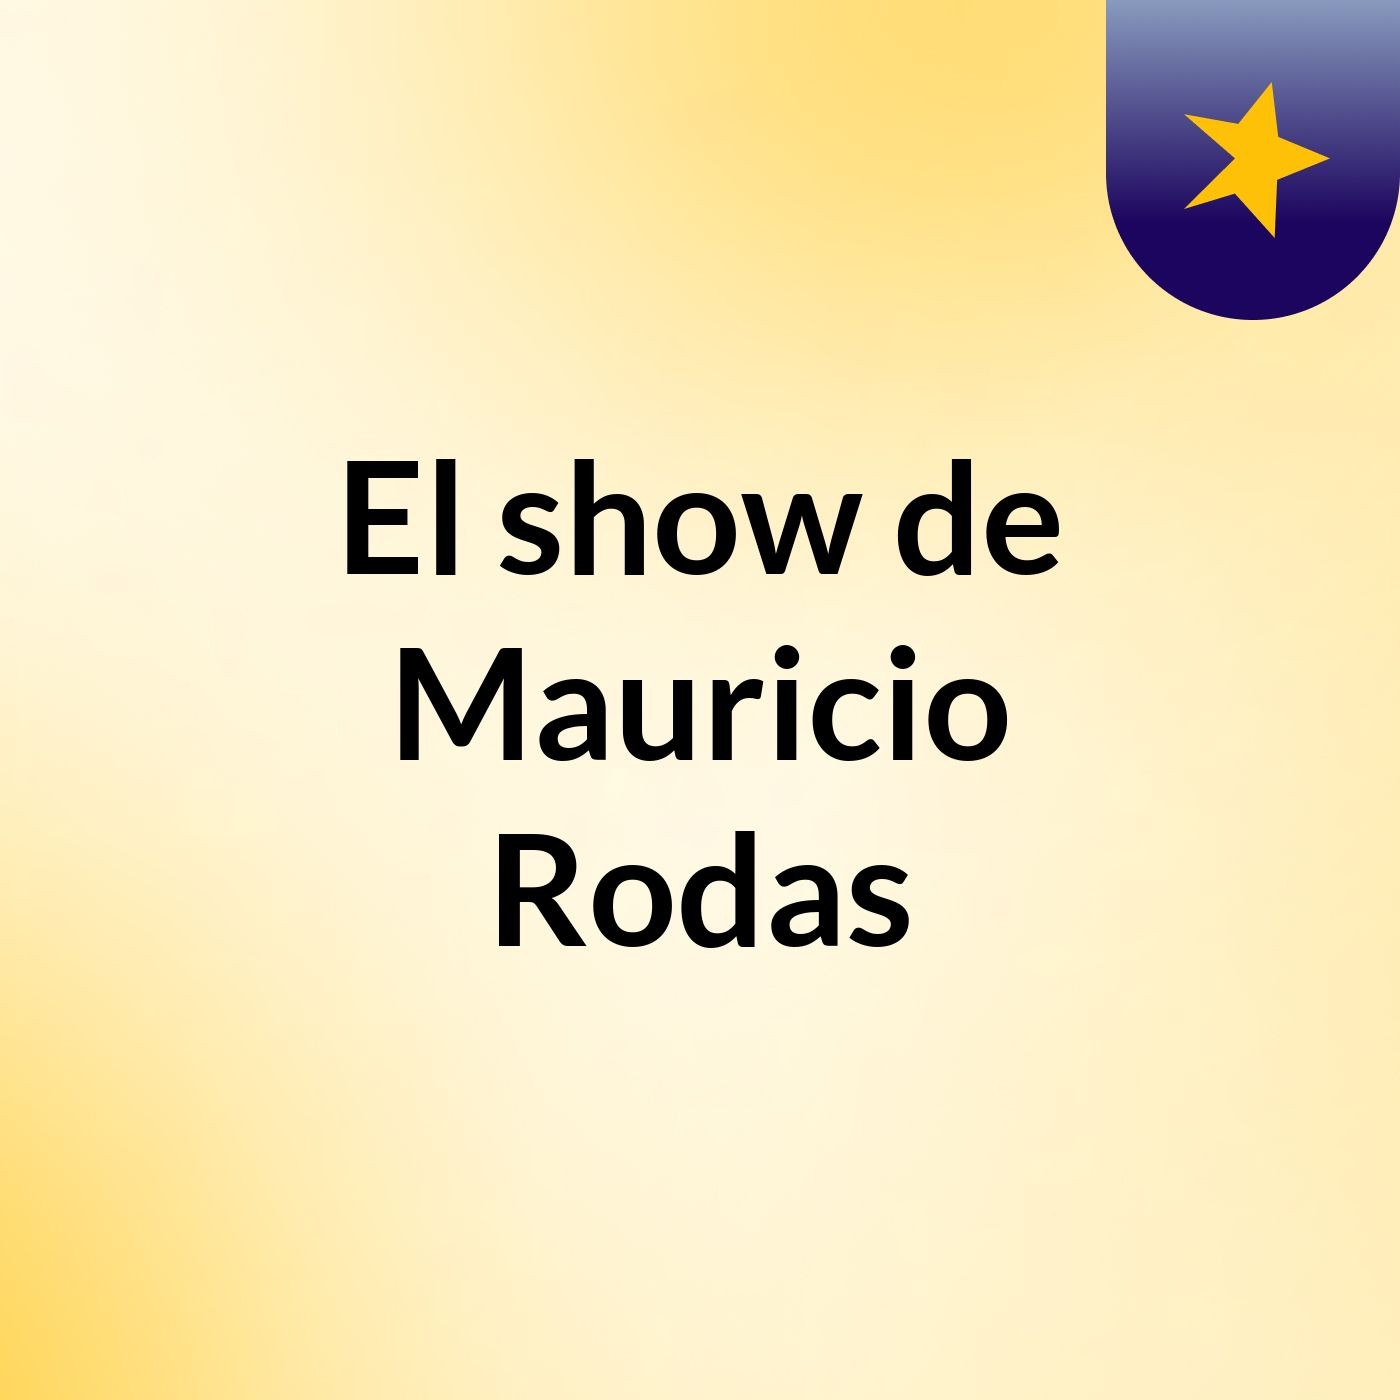 El show de Mauricio Rodas